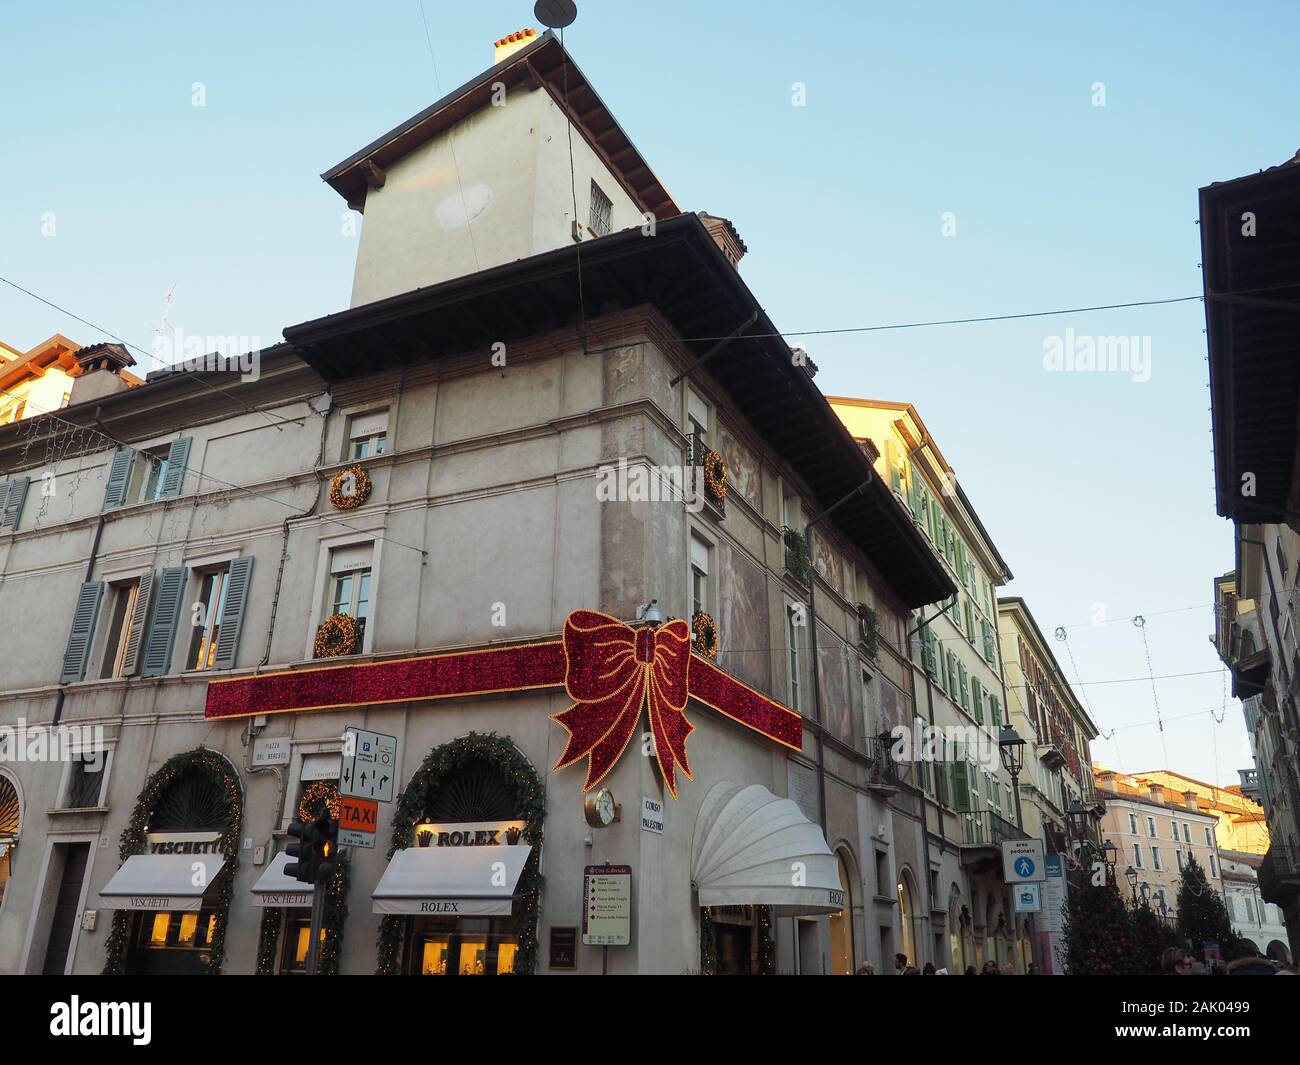 Rolex Red Bow Weihnachtsdekoration - Brescia - Italien Stockfoto